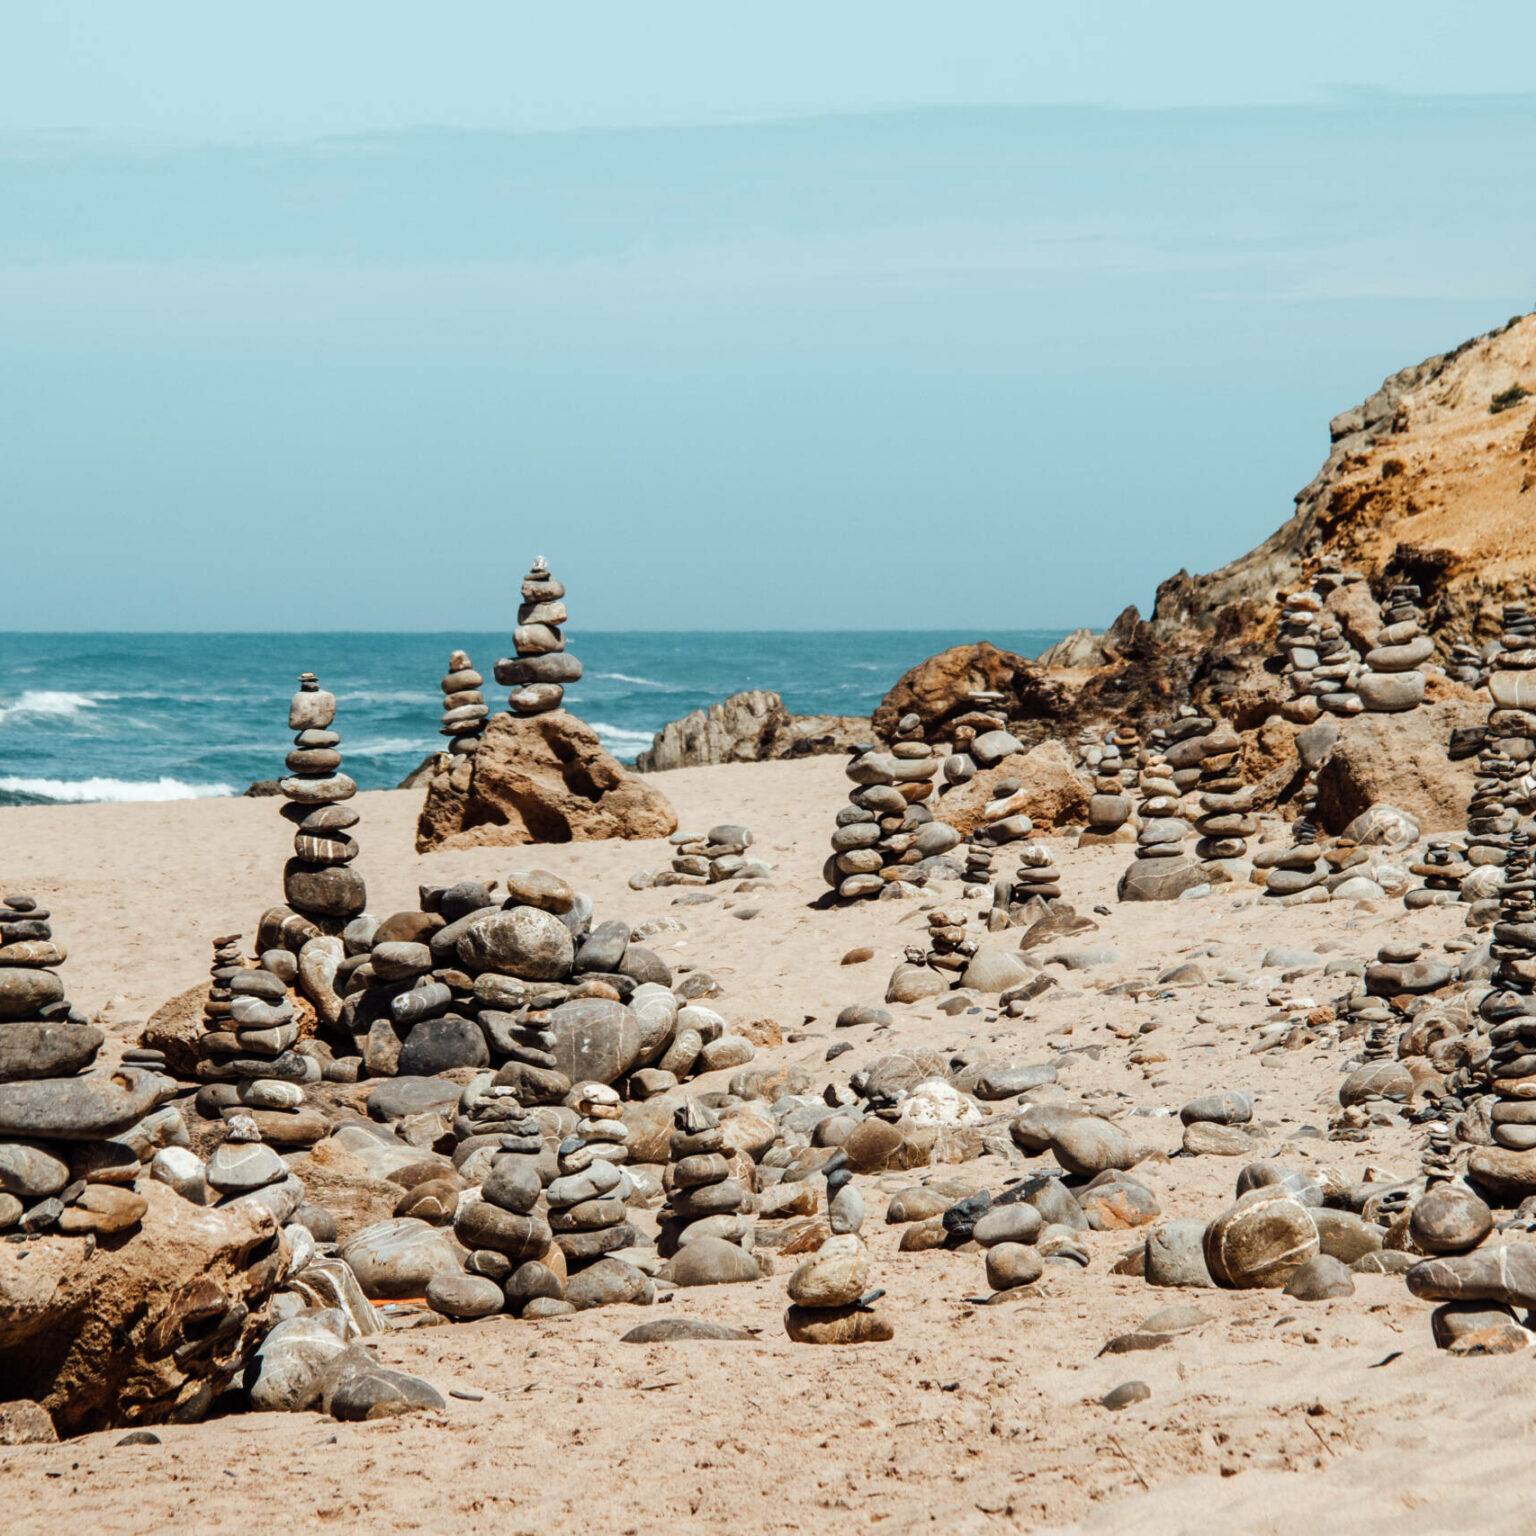 Mehrere Steintürme am Strand nahe des Meeres von Alentejo